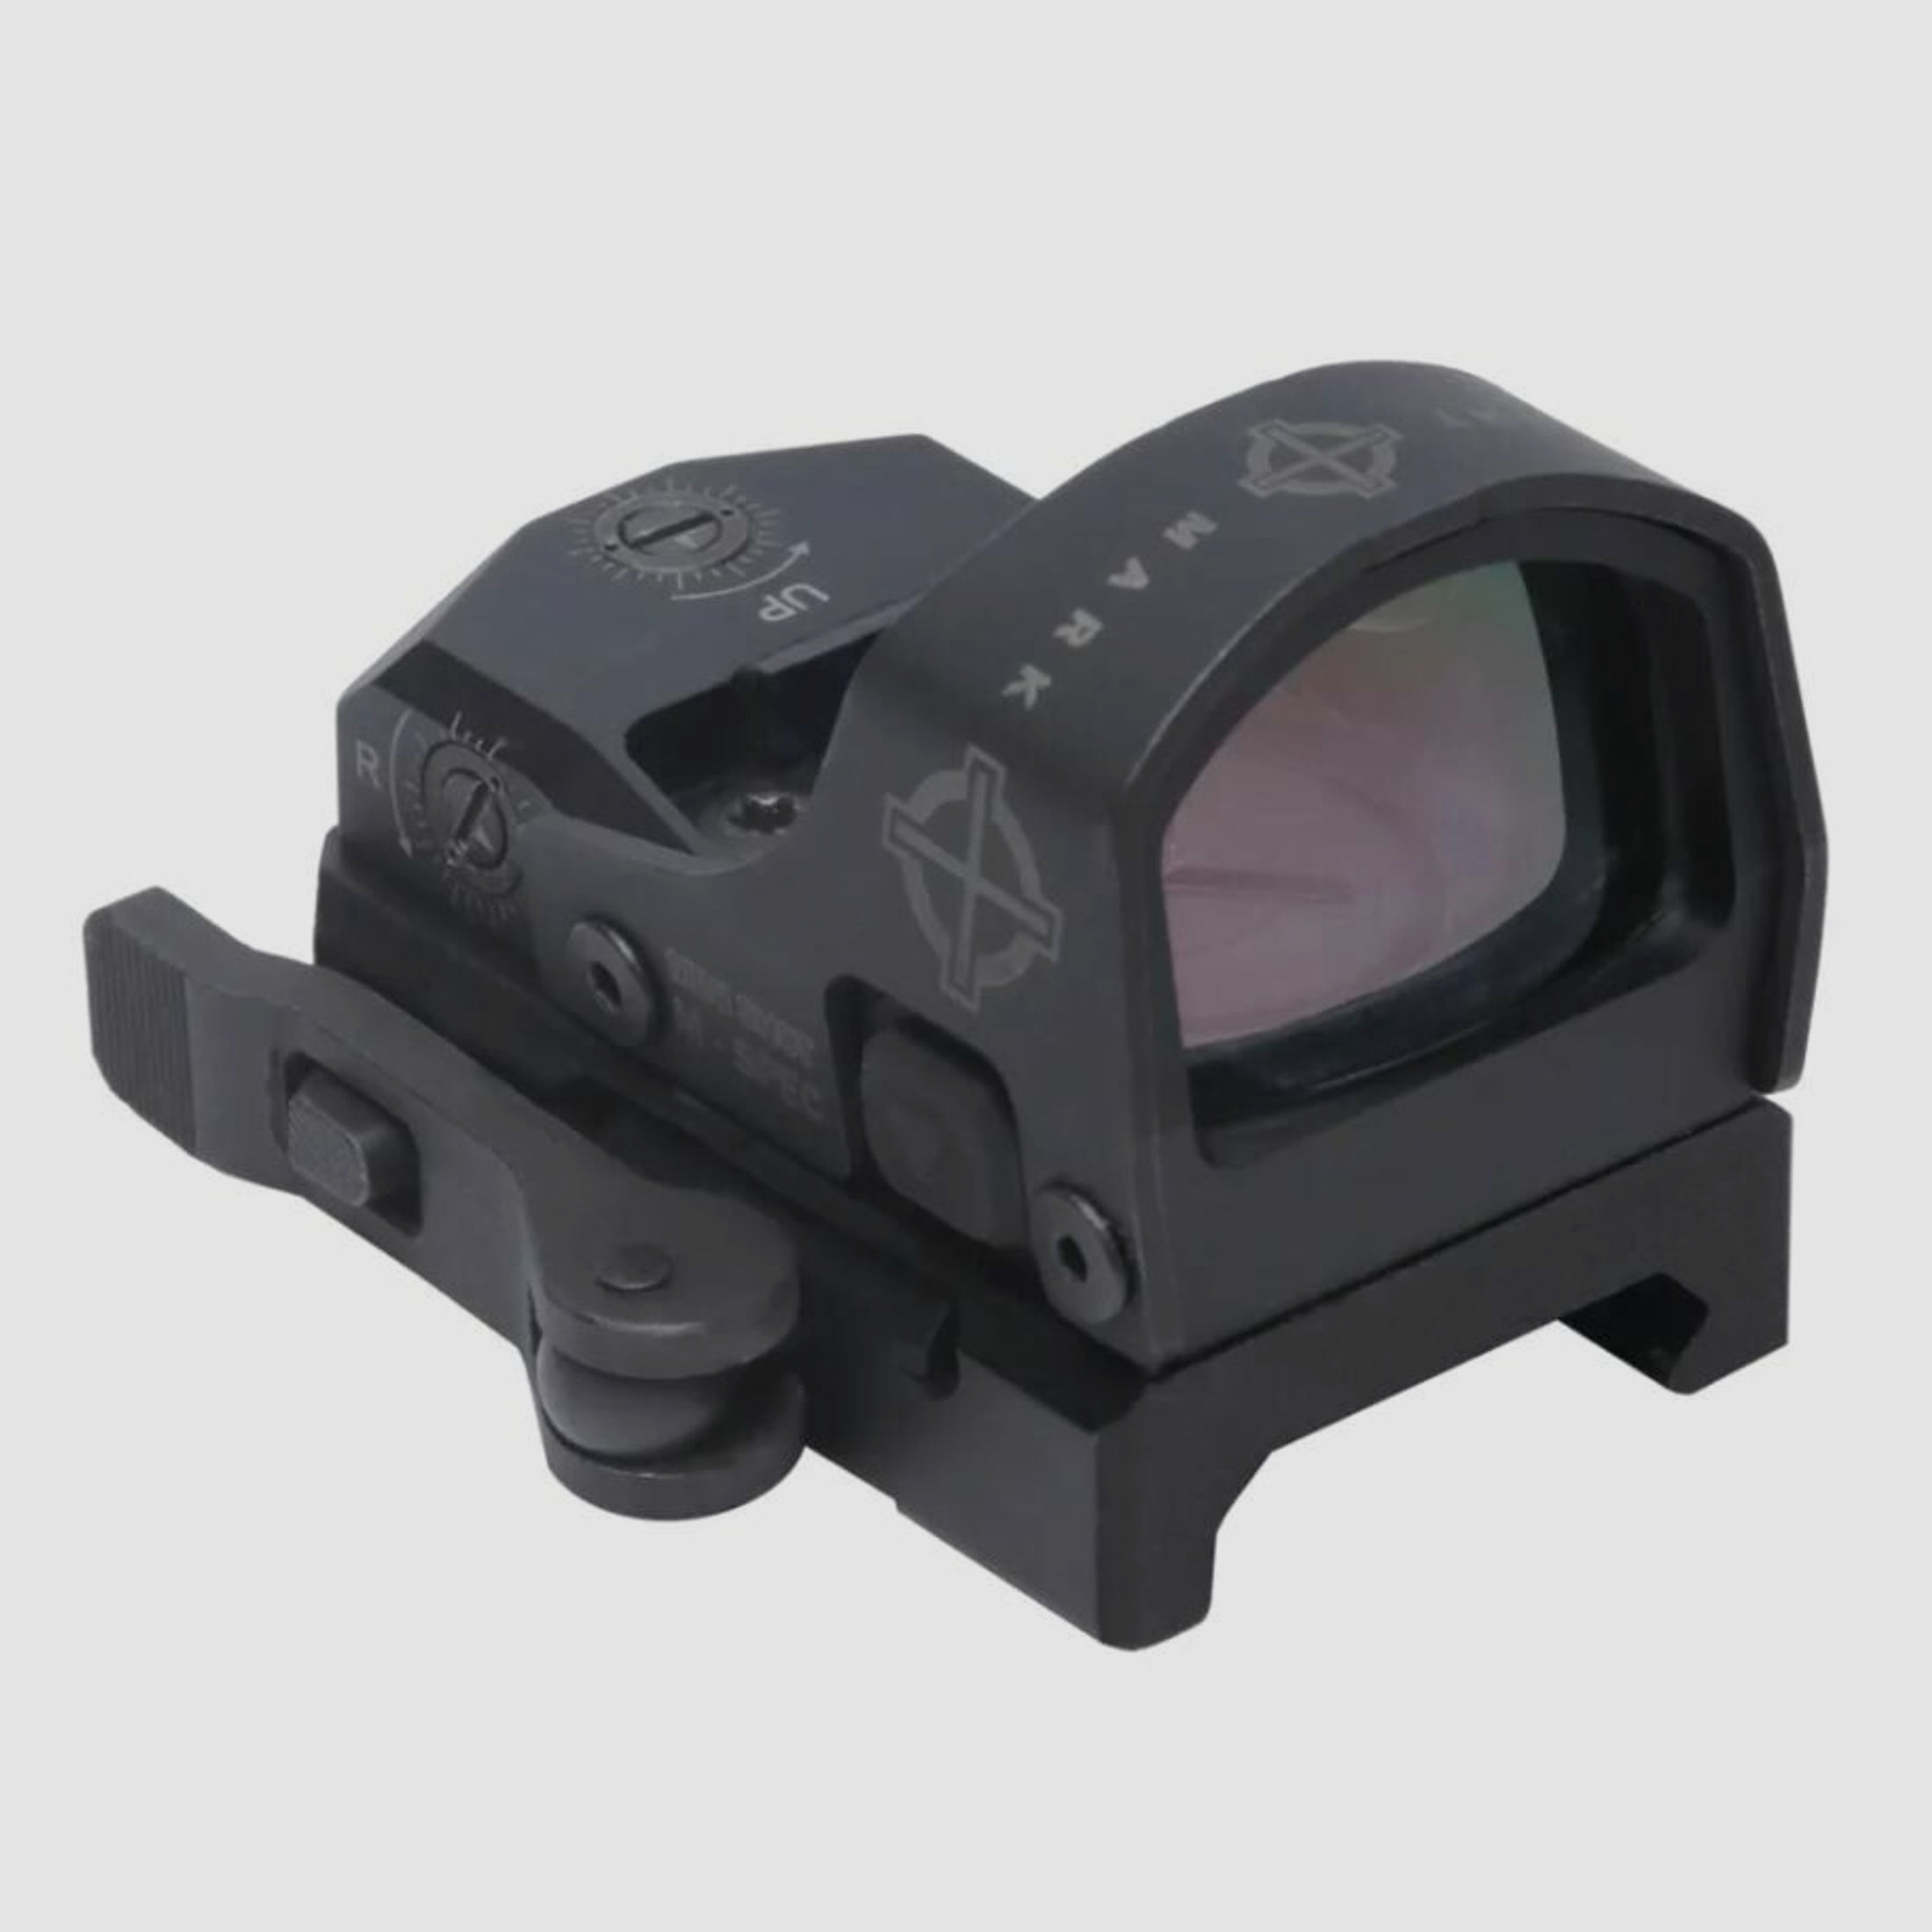 Sightmark	 Mini Shot M-Spec LQD